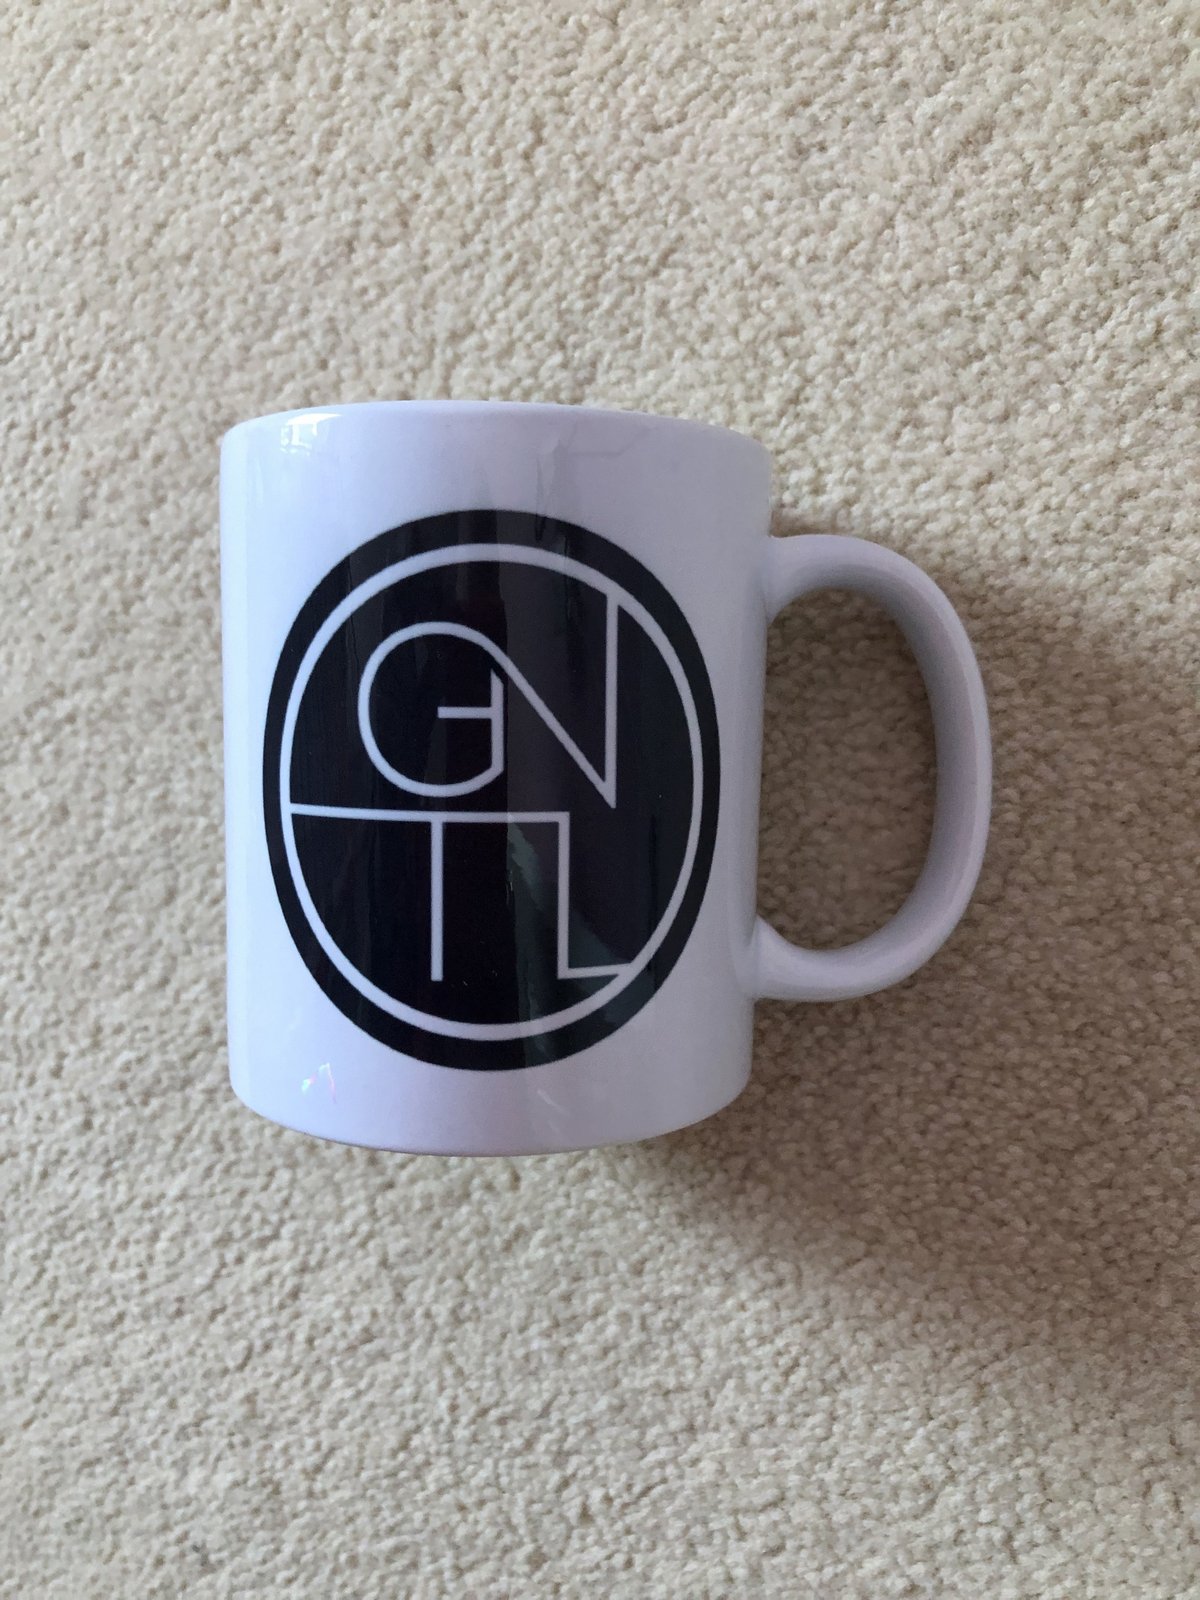 GNTL Ceramic Mug